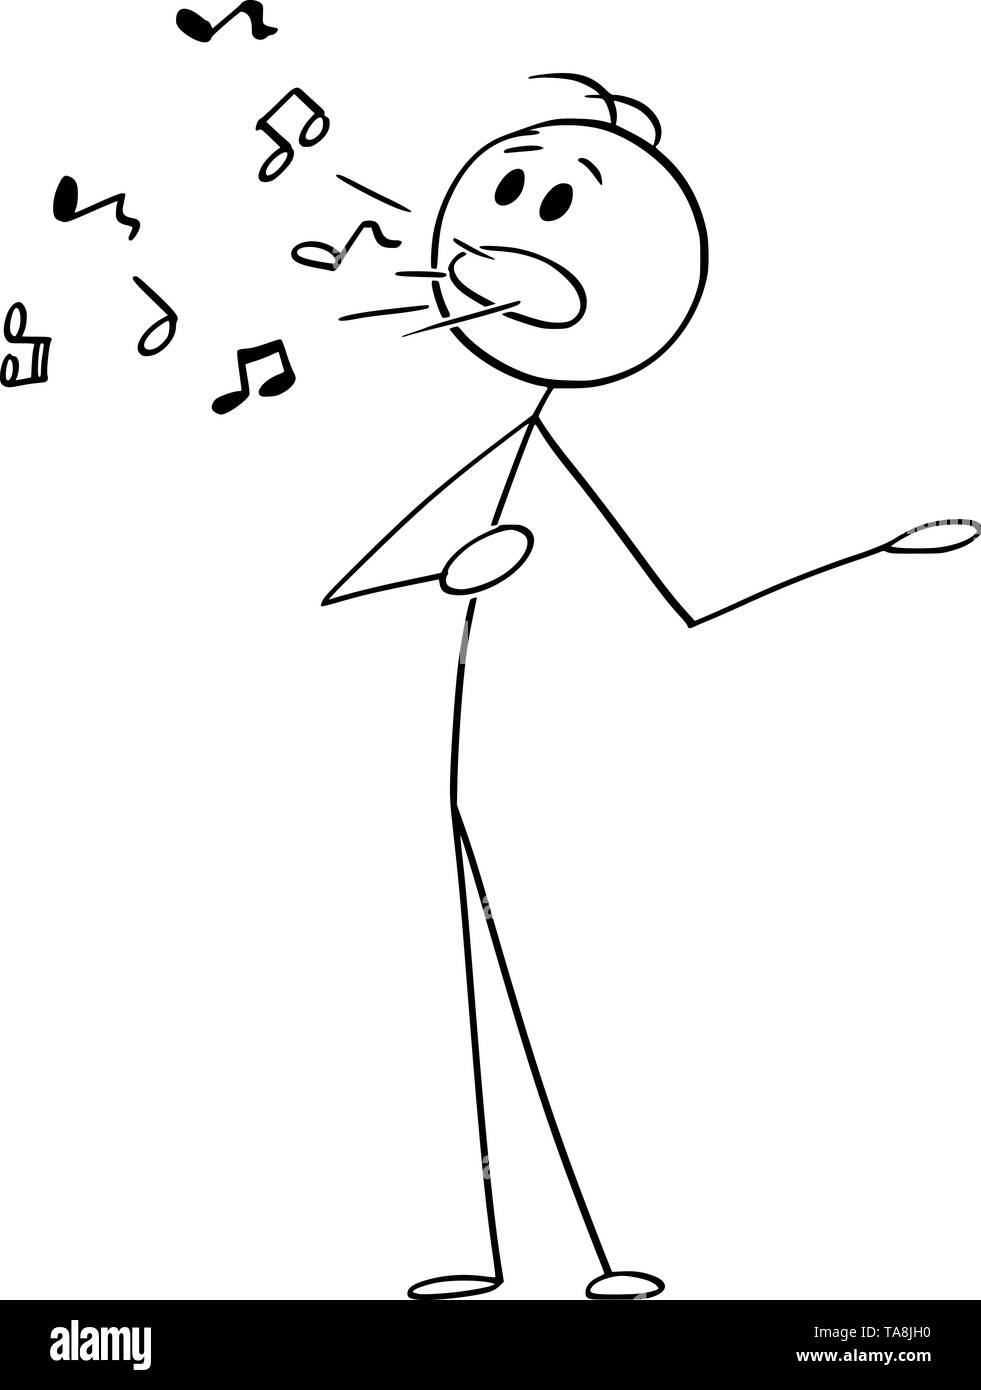 Vector cartoon stick figure dessin illustration conceptuelle de l'homme ou de singer le chant avec les notes de musique venant de sa bouche. Illustration de Vecteur